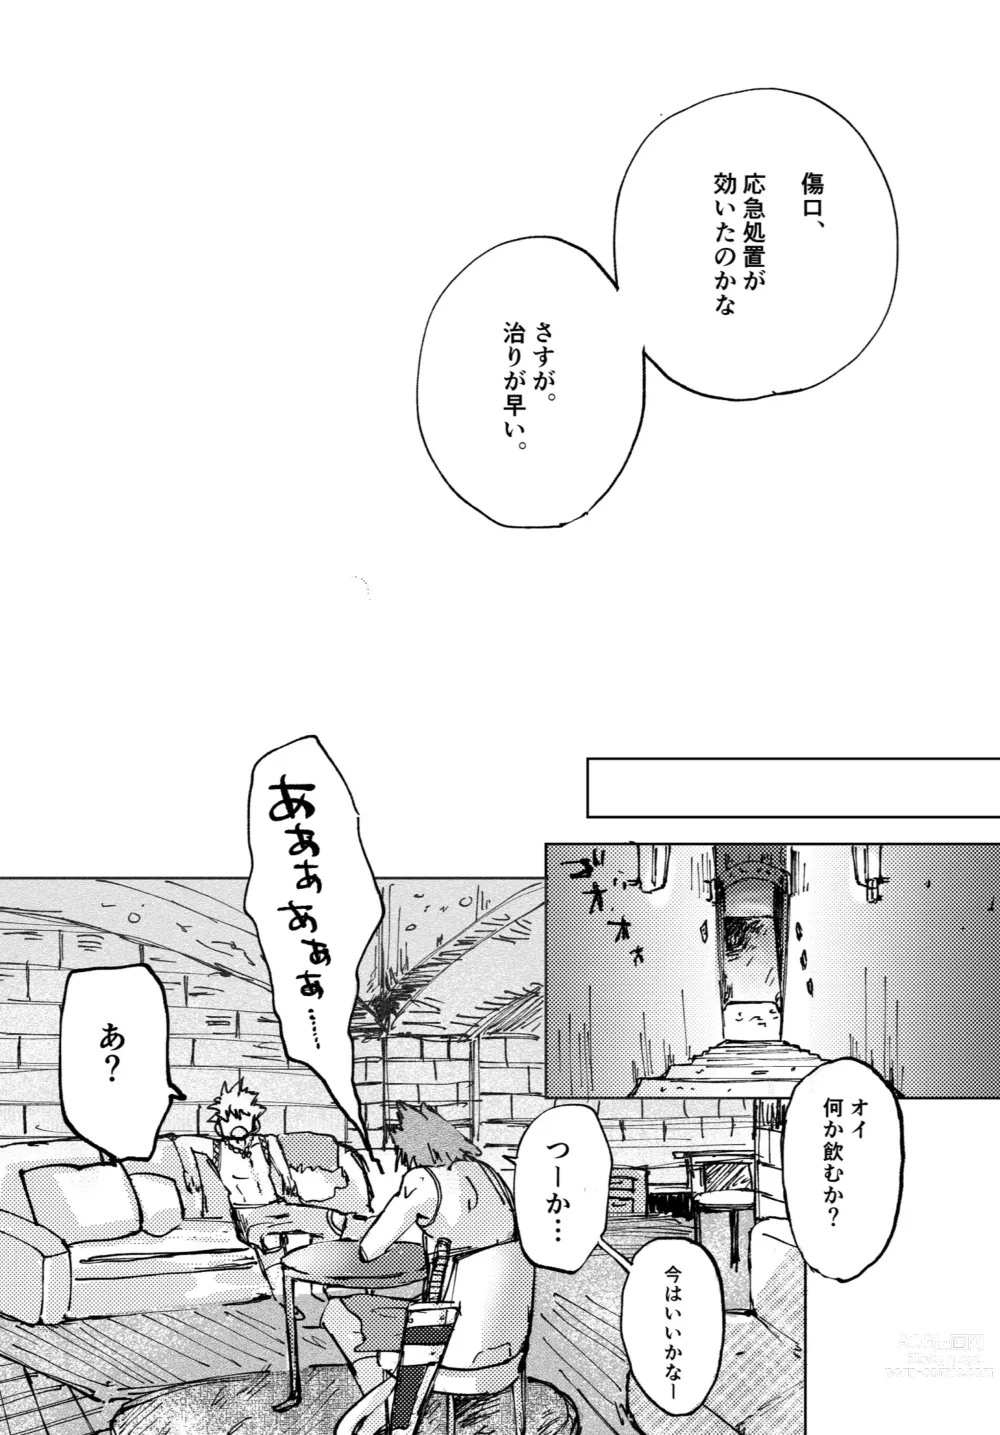 Page 34 of doujinshi Futatsu no Inochi